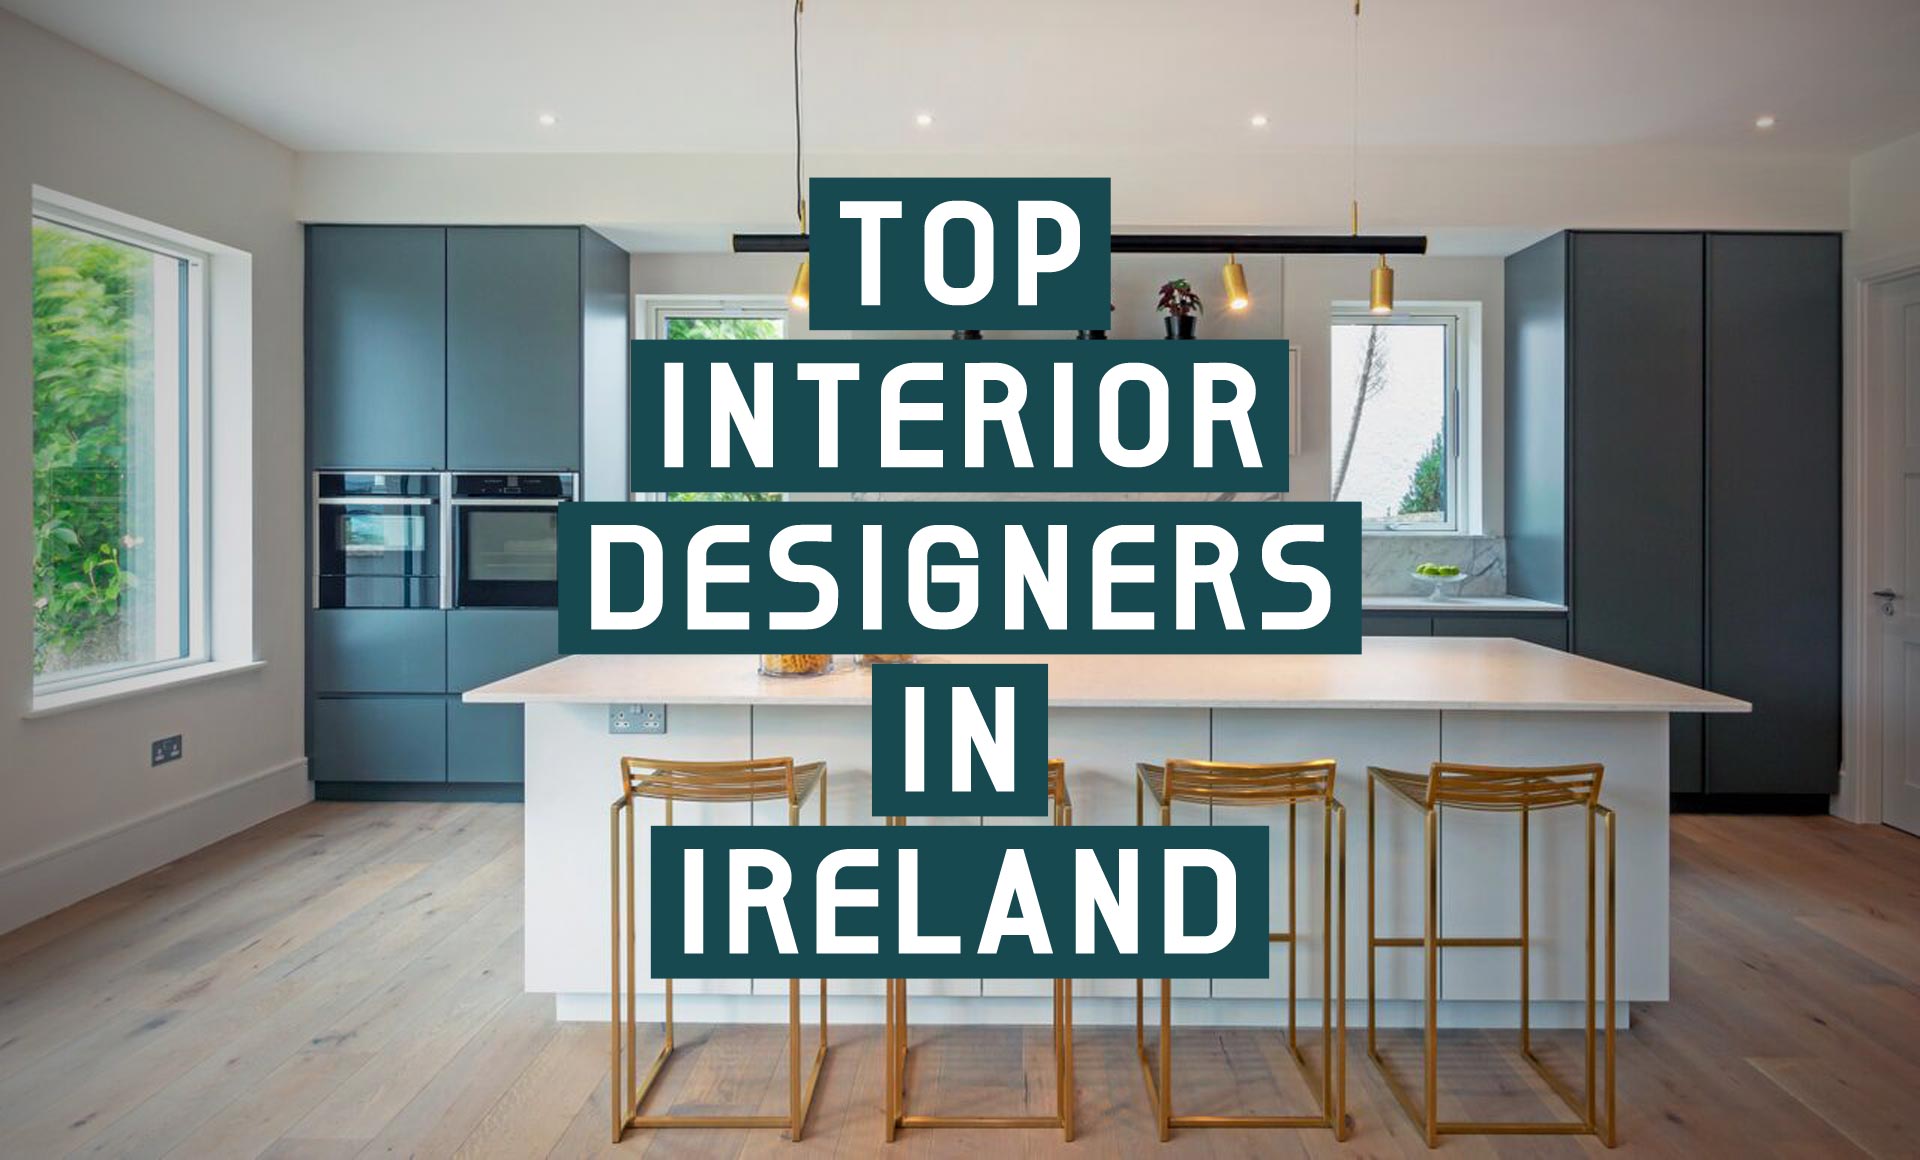 Top interior designers in Ireland